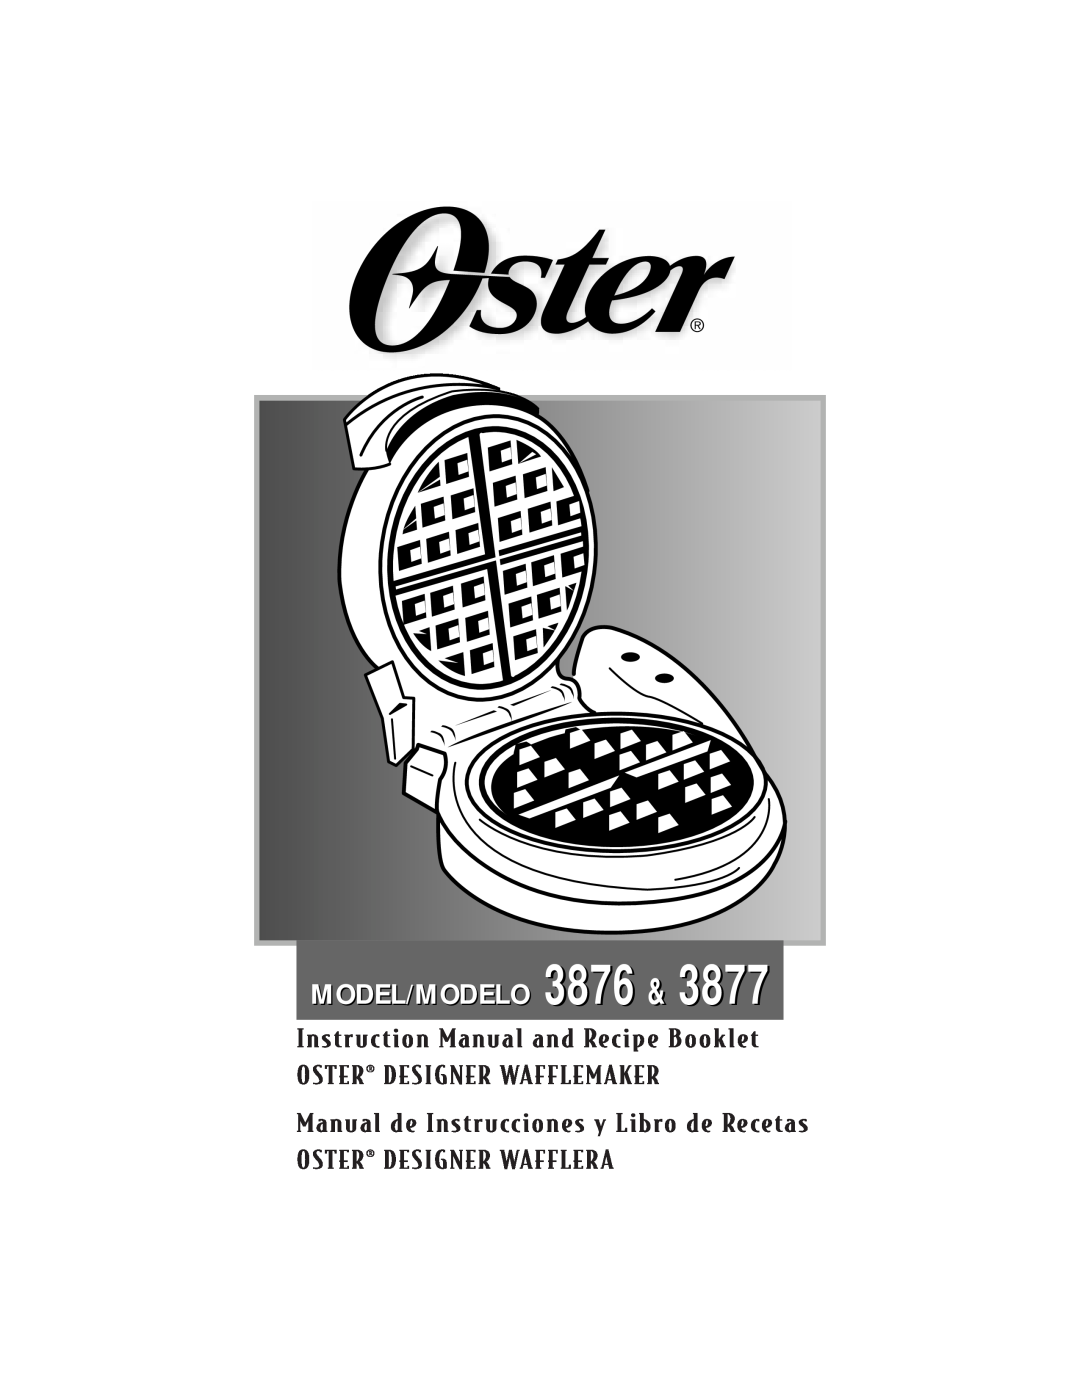 Oster 3877, 3876 instruction manual Oster¨ Designer Wafflemaker, Manual de Instrucciones y Libro de Recetas, Model/Modelo 